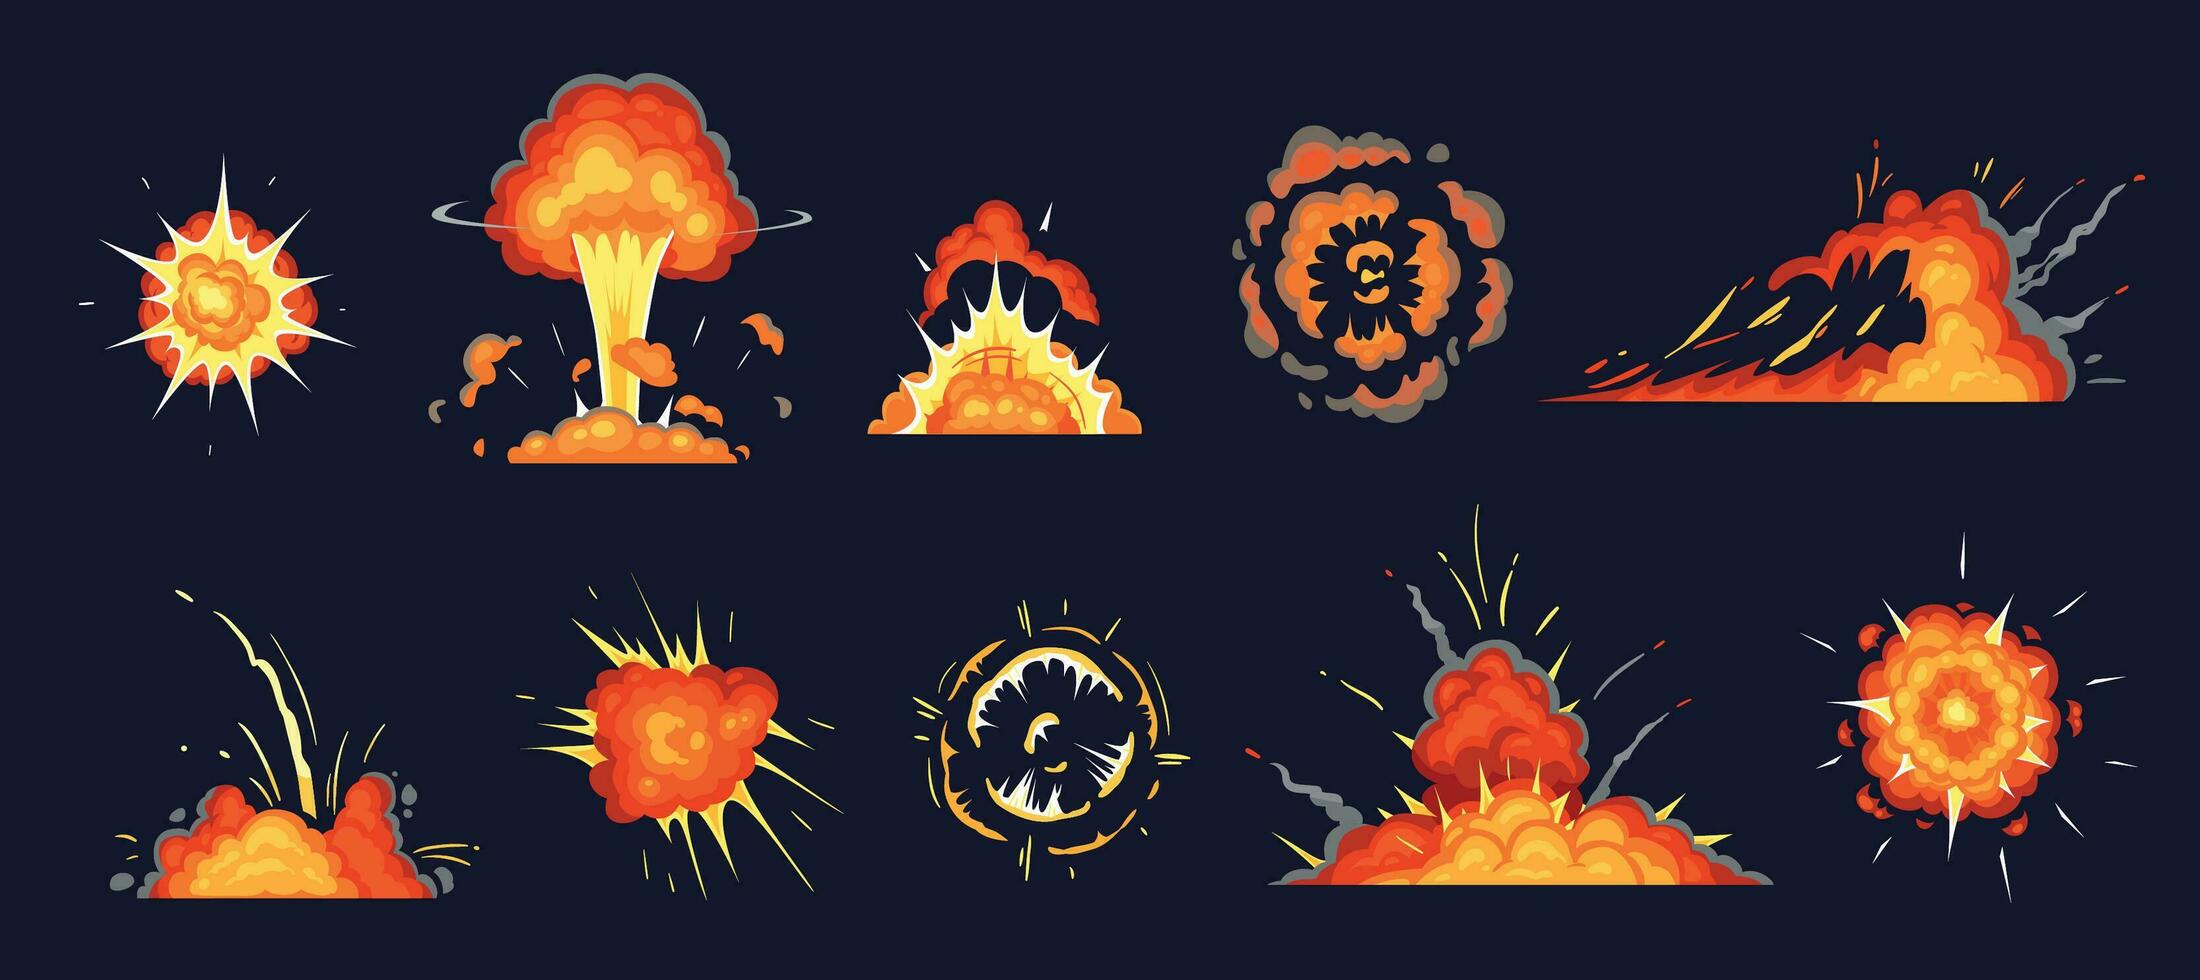 dibujos animados explosión. explotando bomba, atómico explotar efecto y cómic explosiones fumar nubes vector ilustración conjunto